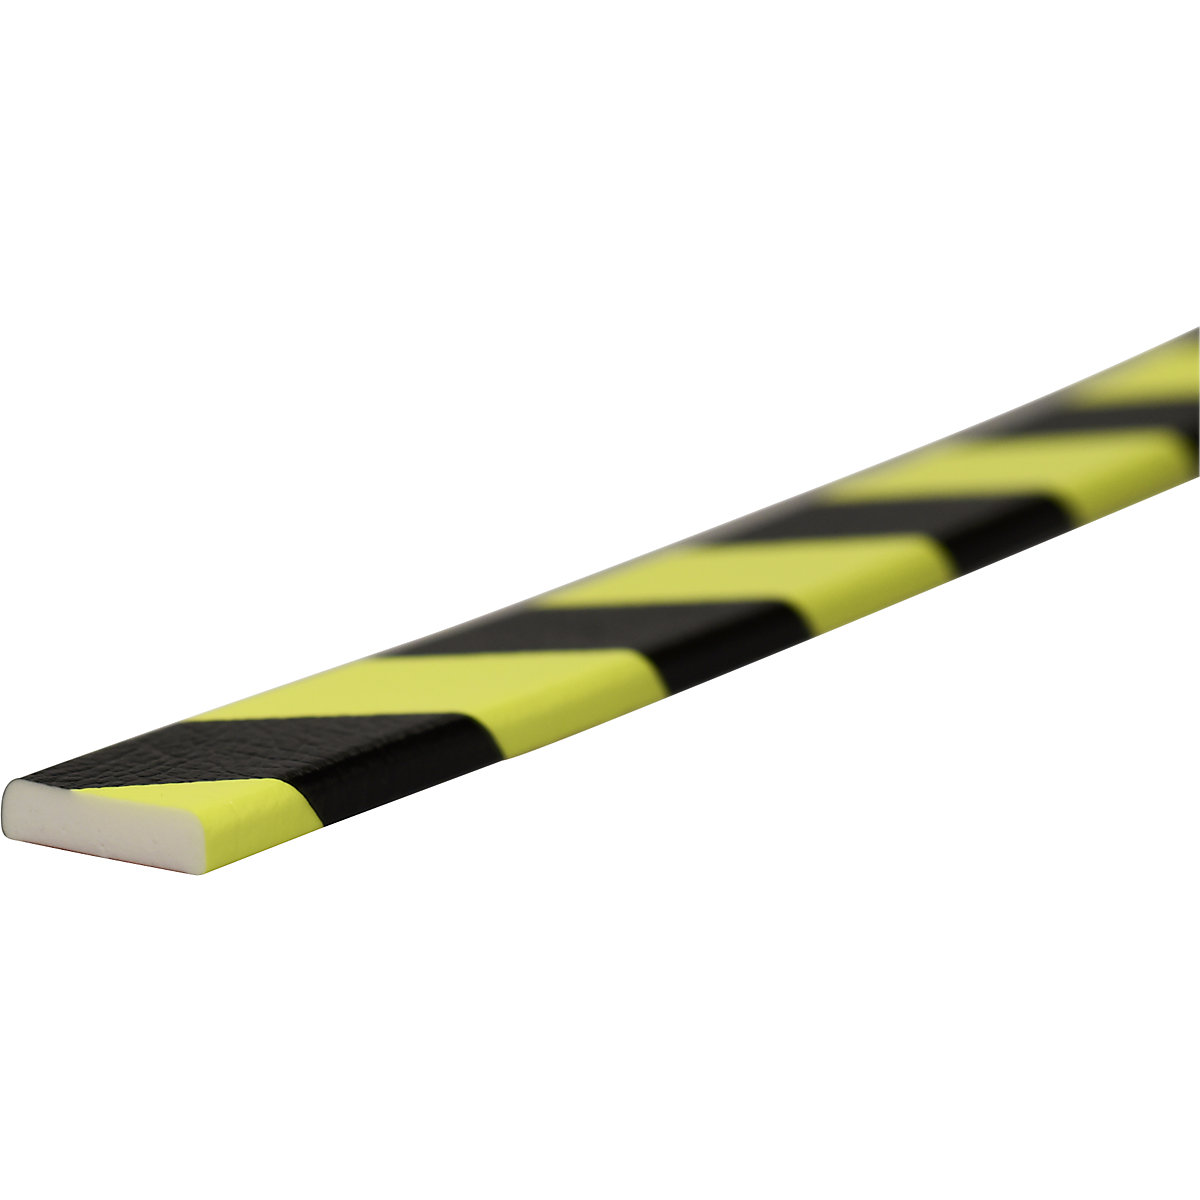 Proteção de superfícies Knuffi® – SHG, tipo F, 1 rolo de 50 m, preto/fluorescente-22